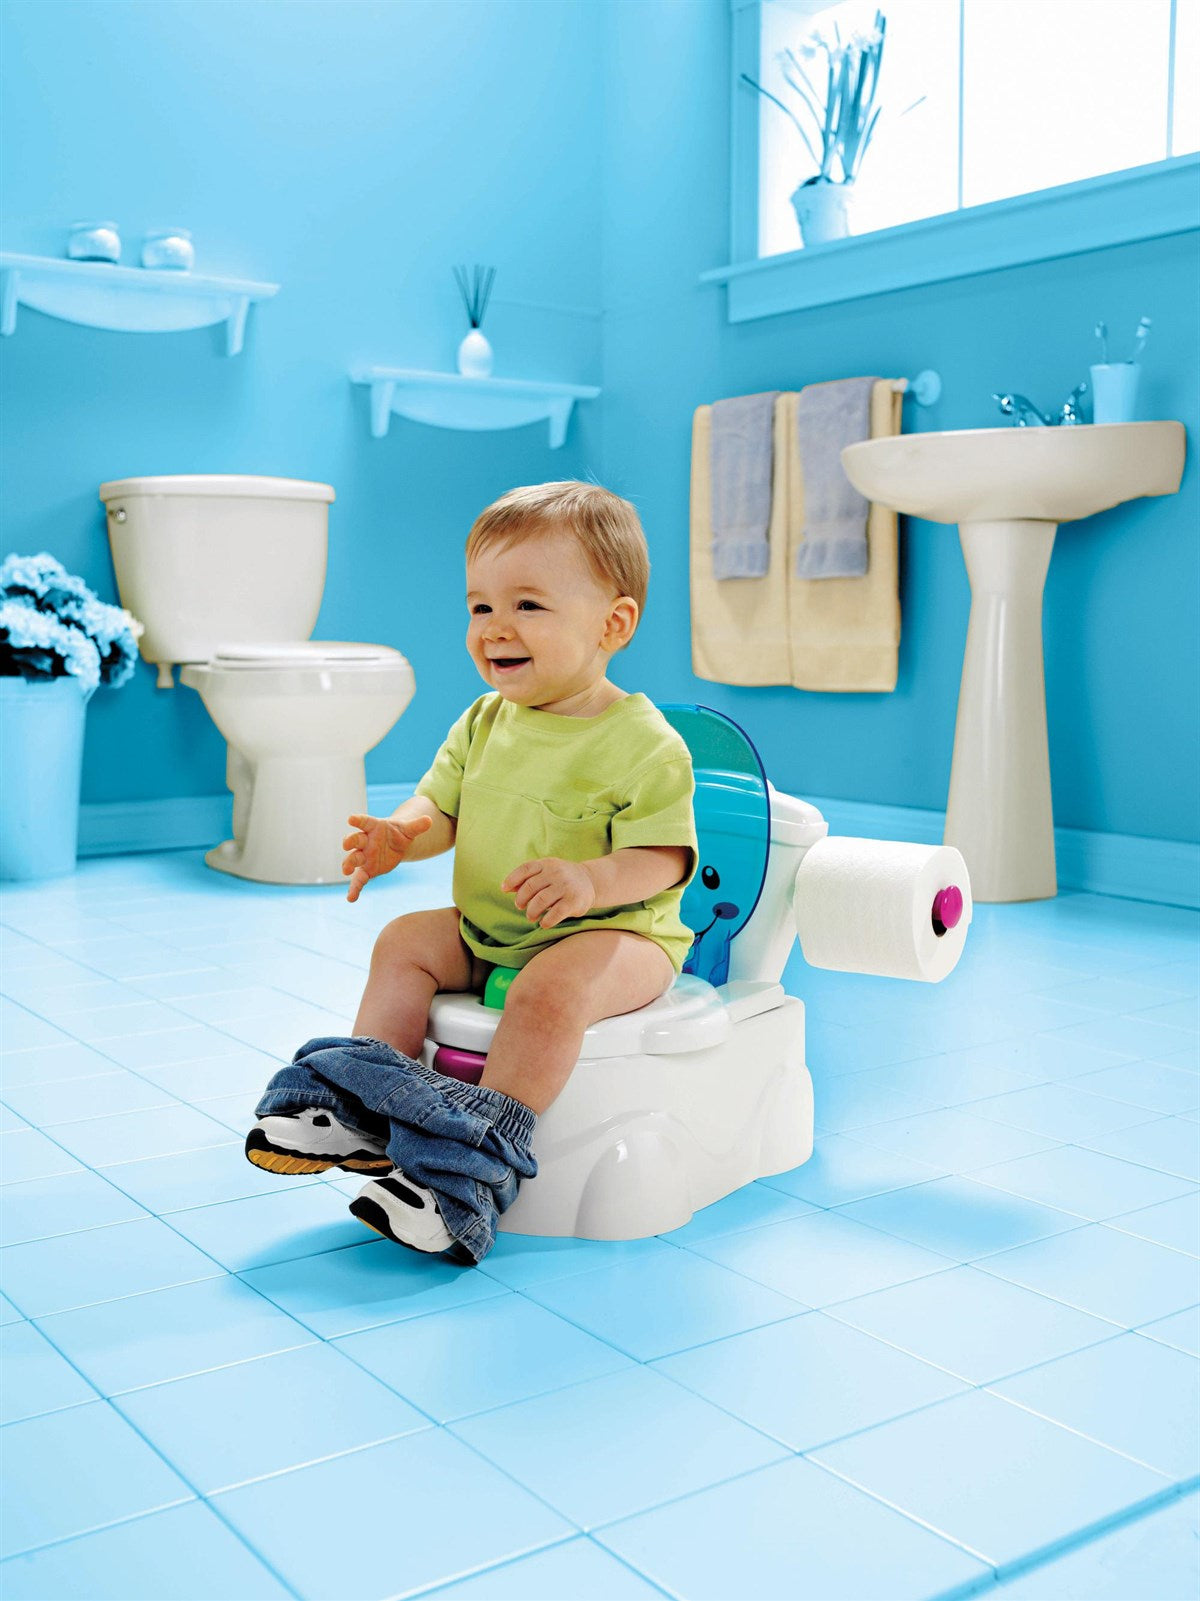 Fisher Price Eğitici Eğlenceli Tuvalet (Türkçe)  BMD23 | Toysall